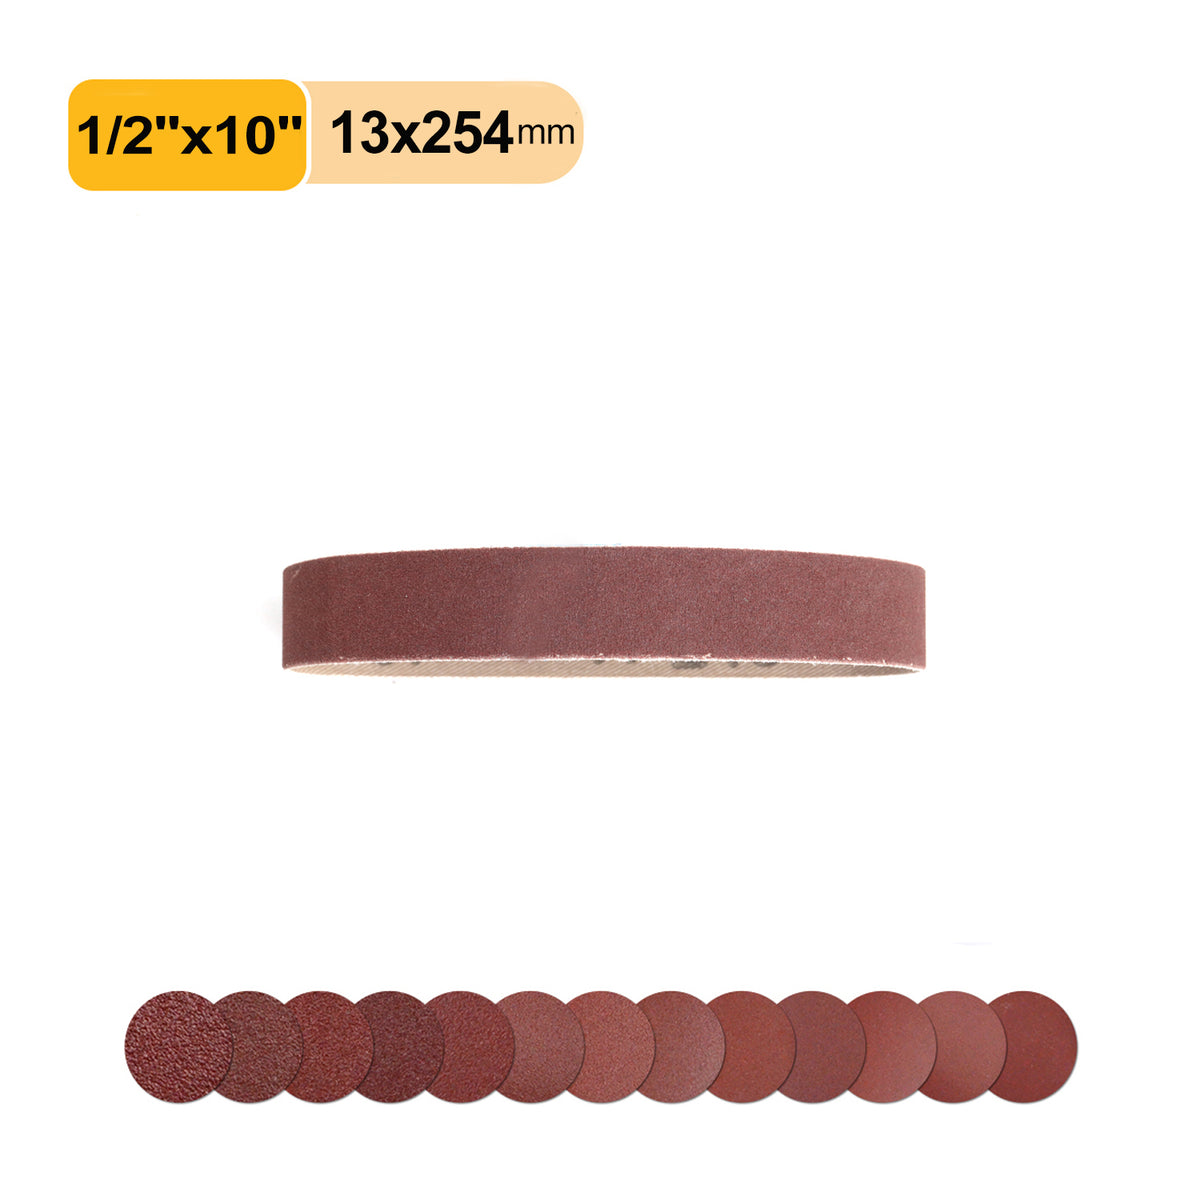 1/2" x 10" (13*254mm) Aluminum Oxide A/O Sanding Belt,1 PC